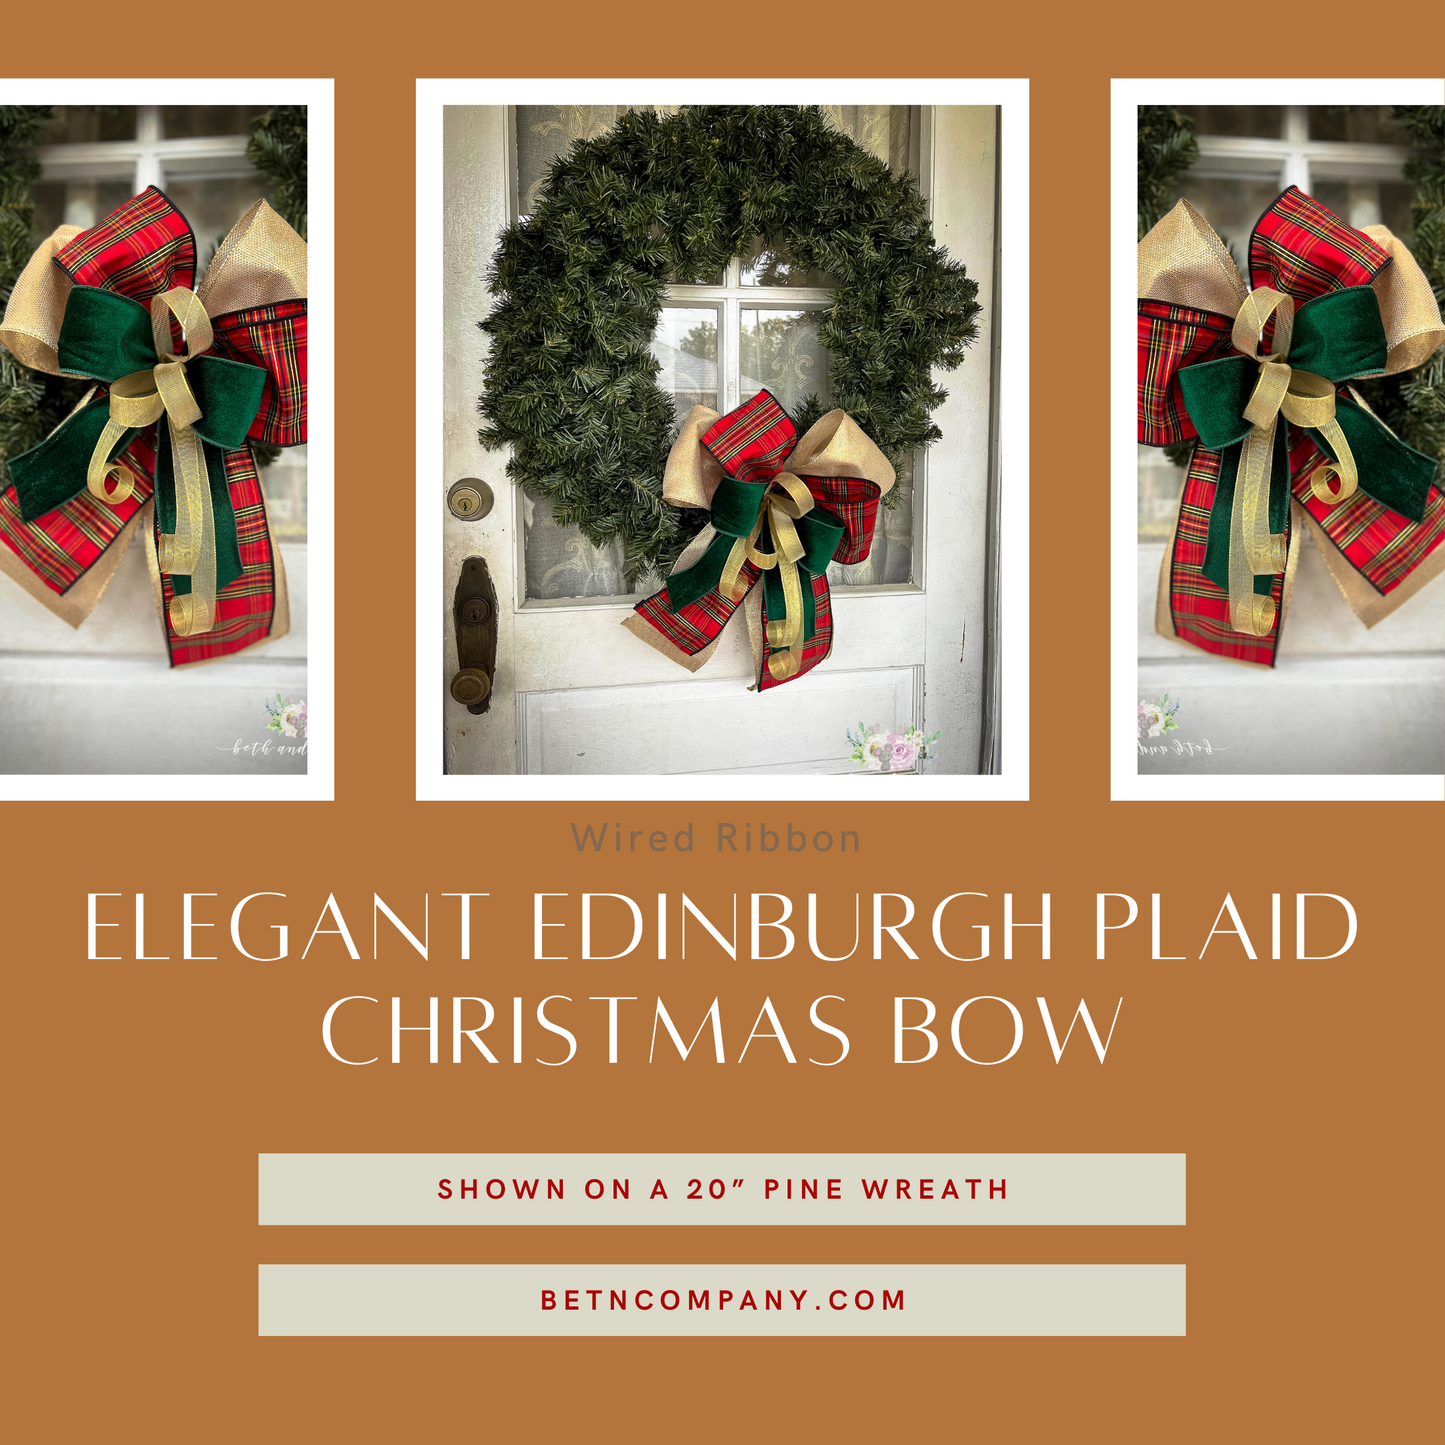 Elegant Edinburgh Plaid Christmas Bow